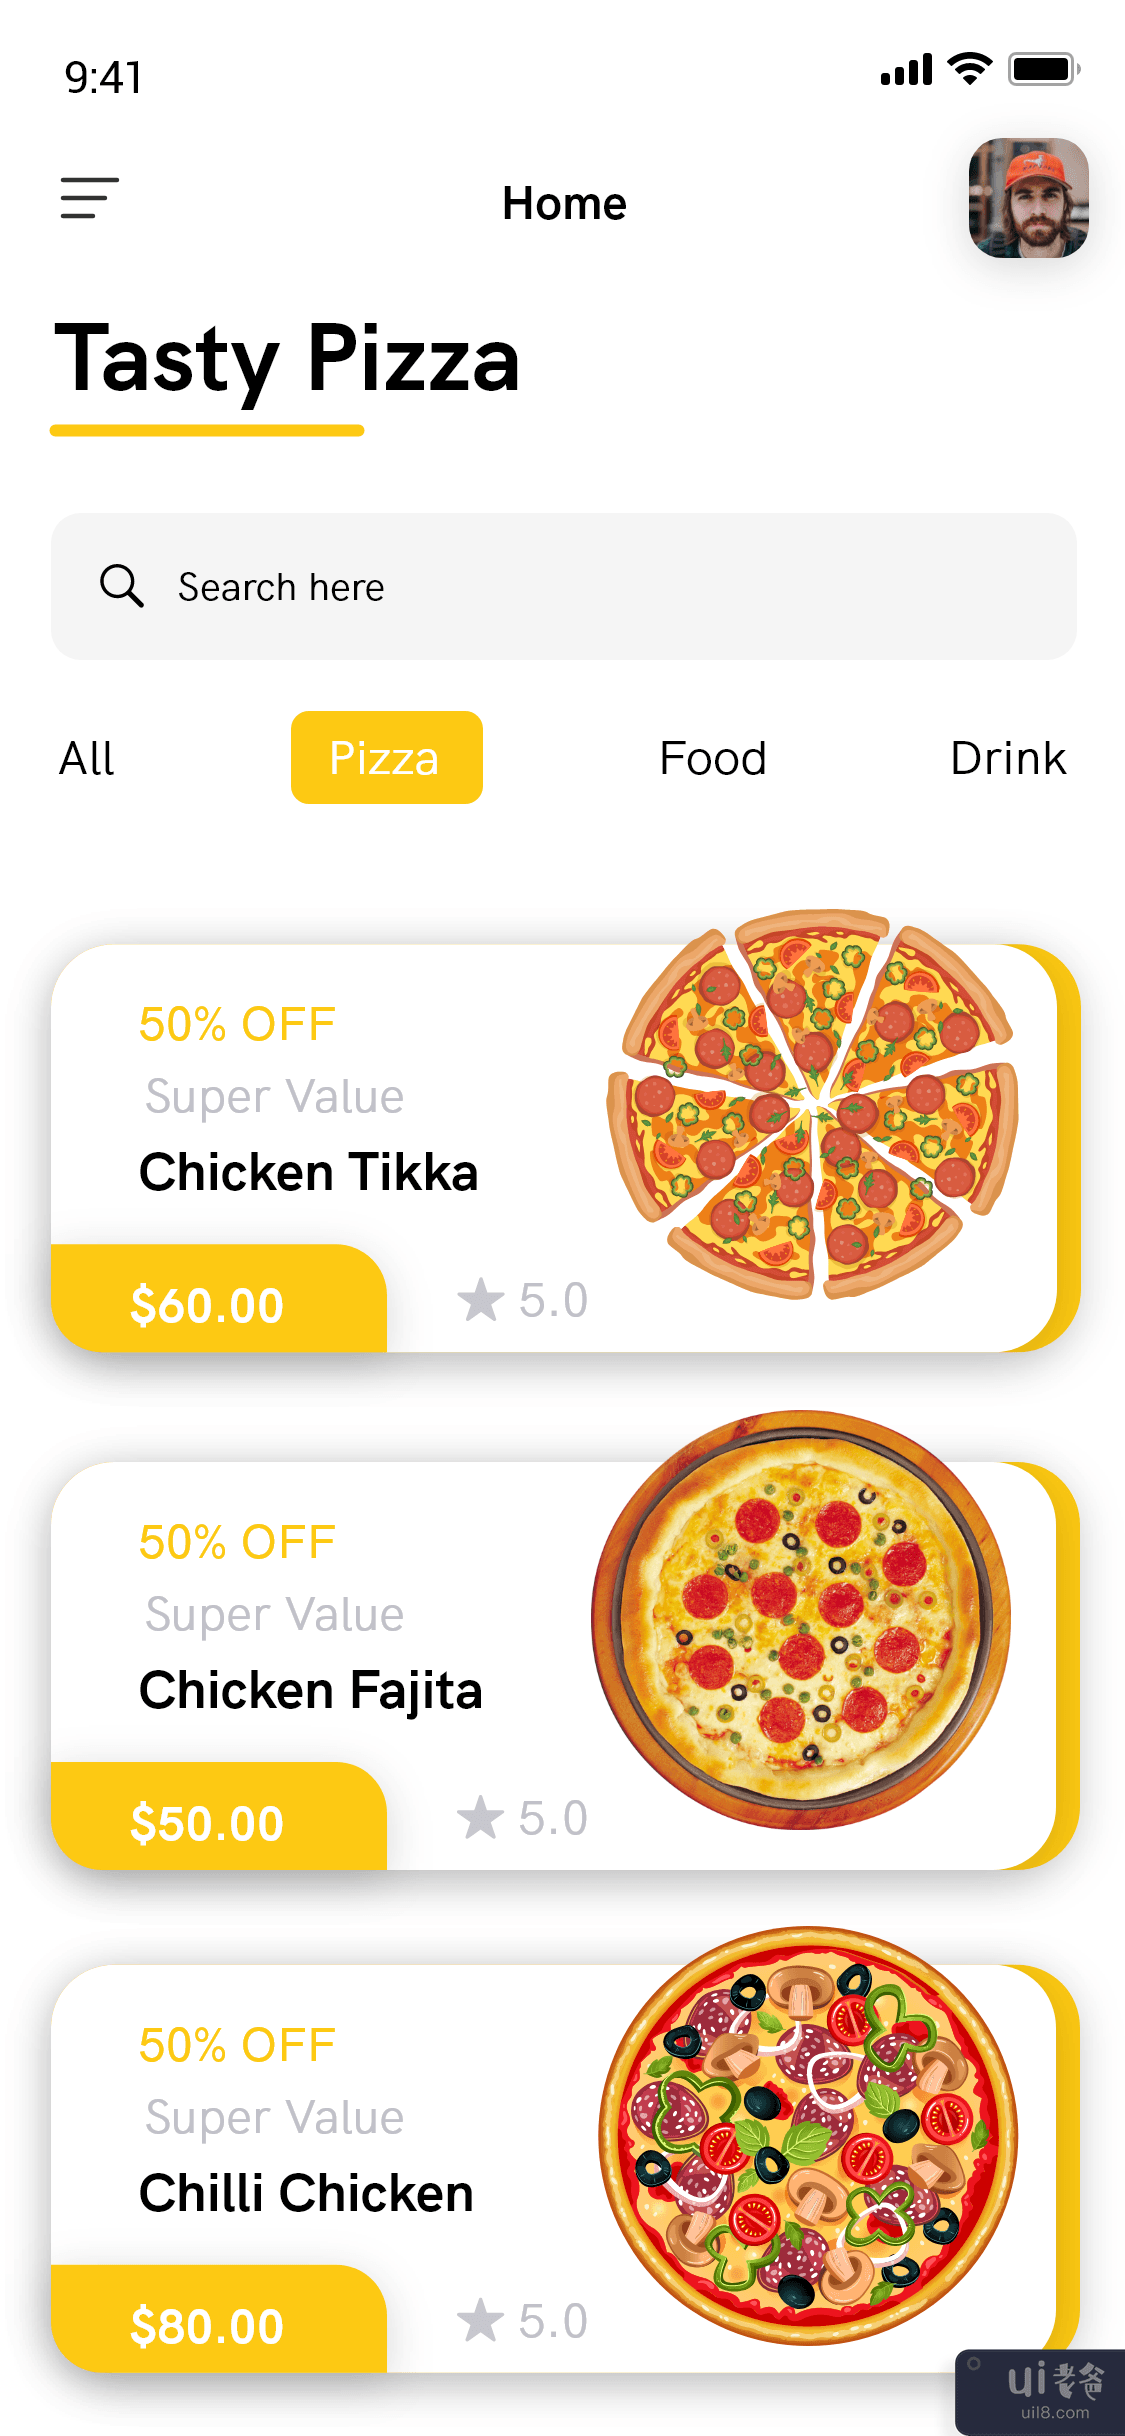 比萨配送应用程序 - 食品配送应用程序(Pizza Delivery app - Food Delivery App)插图5